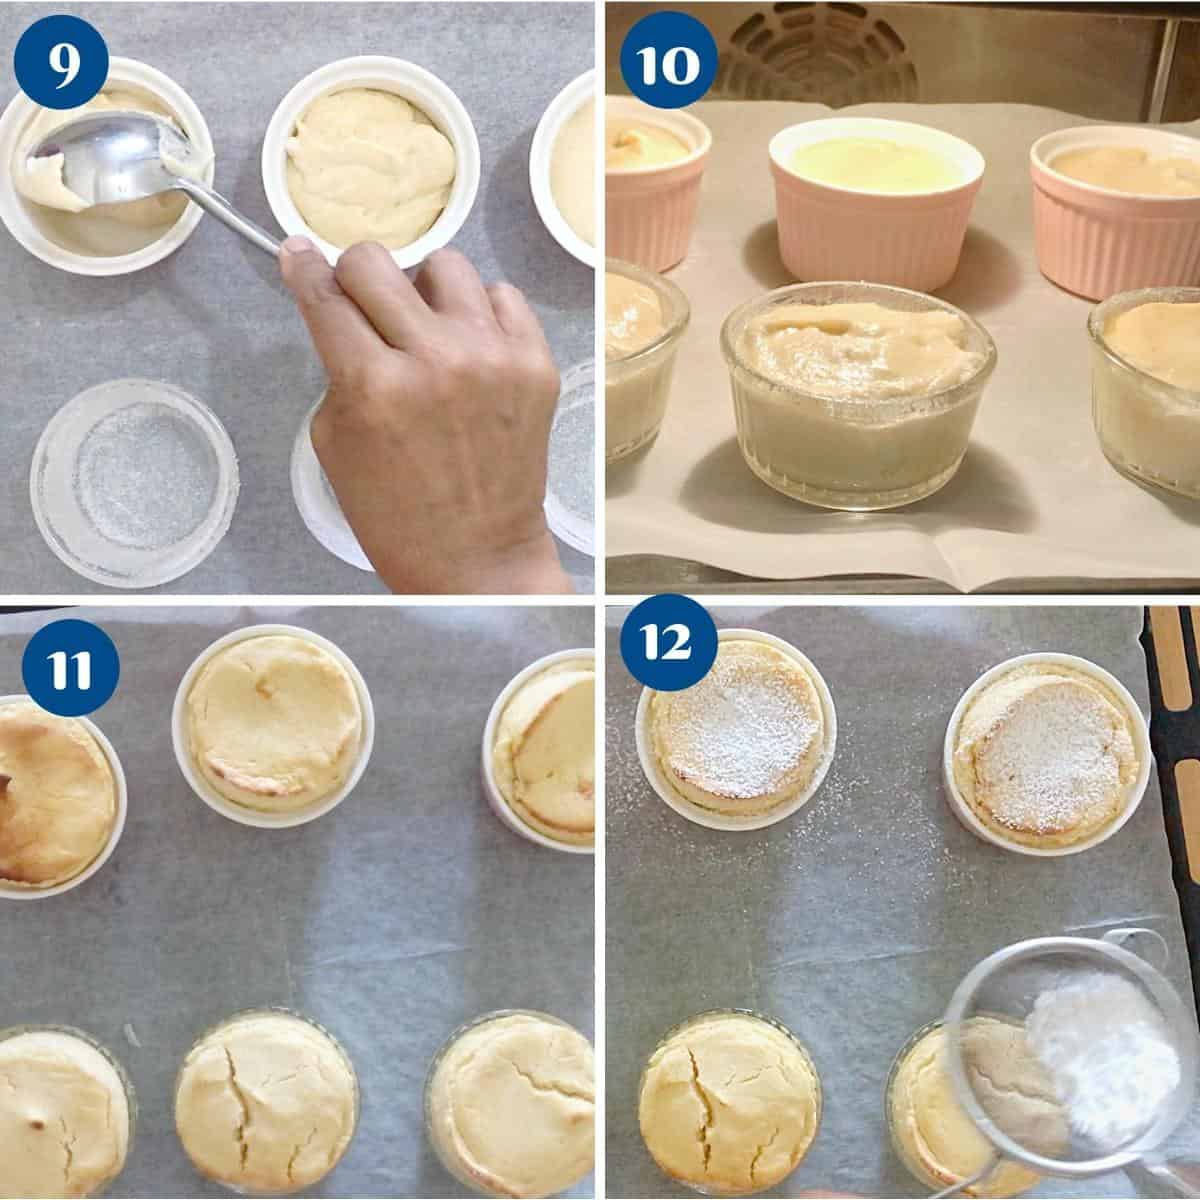 Progress pictures baking the soufflé.